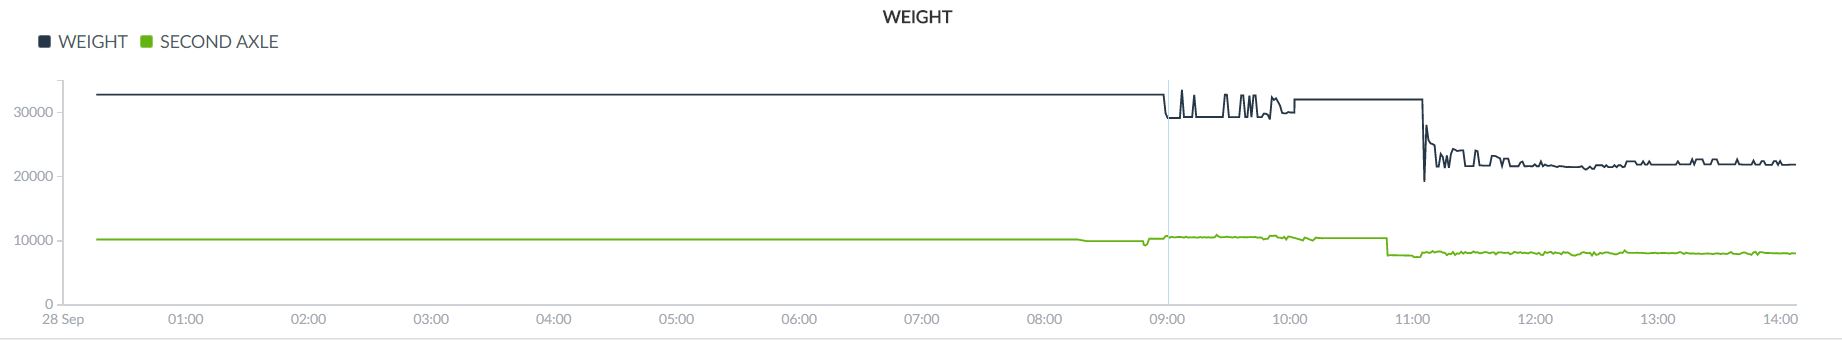 new_graph_weight.JPG